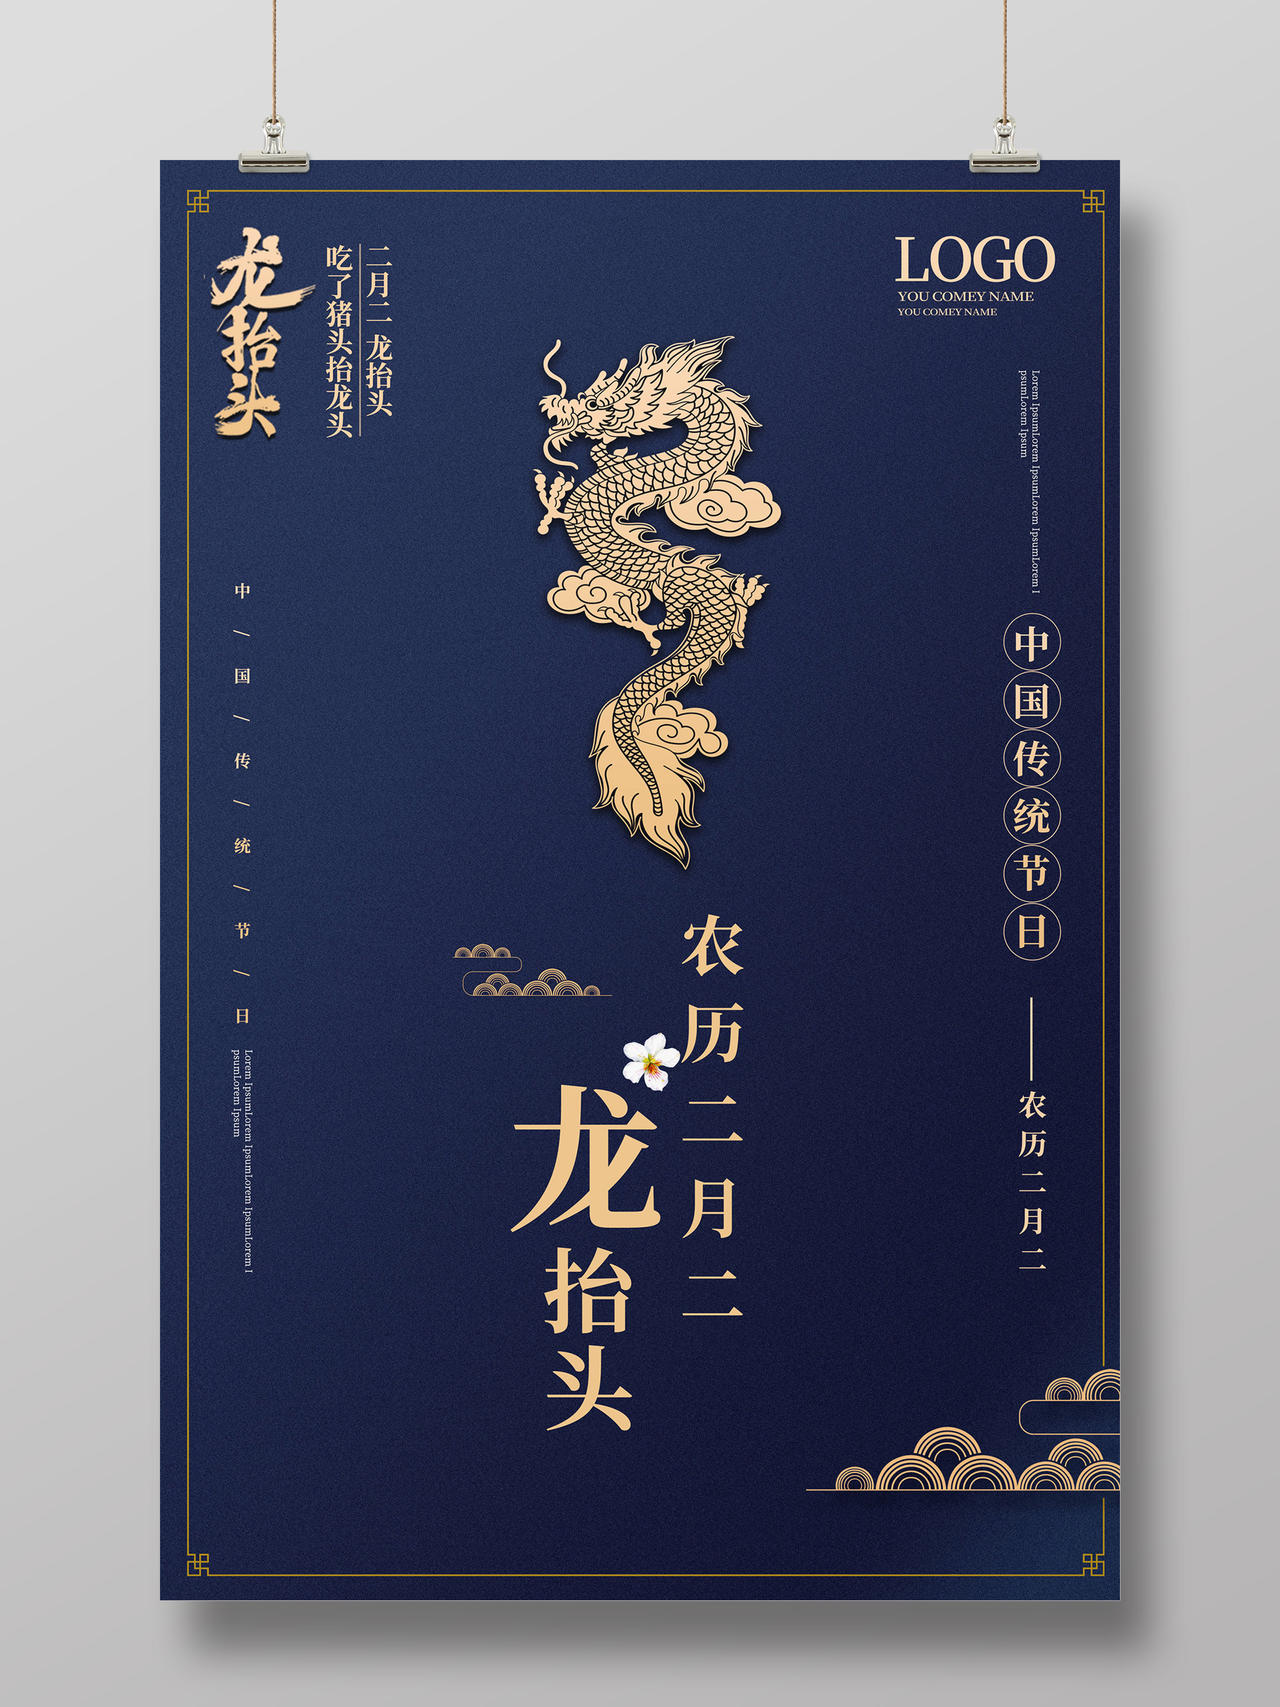 深蓝色简洁大气二月初二龙抬头中国传统节日海报